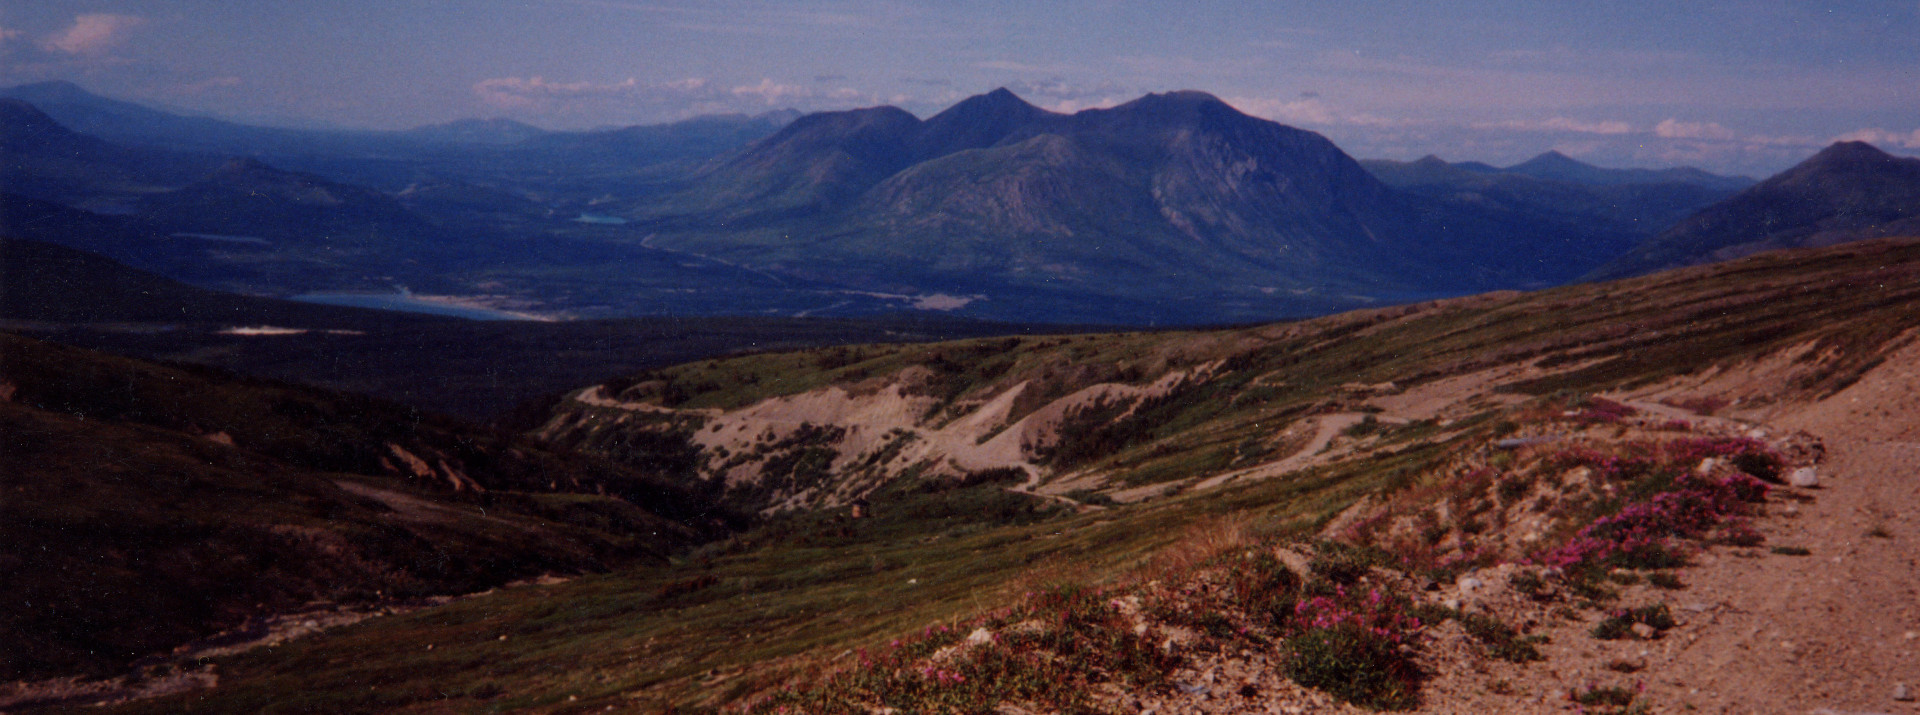 nature Montana mountain